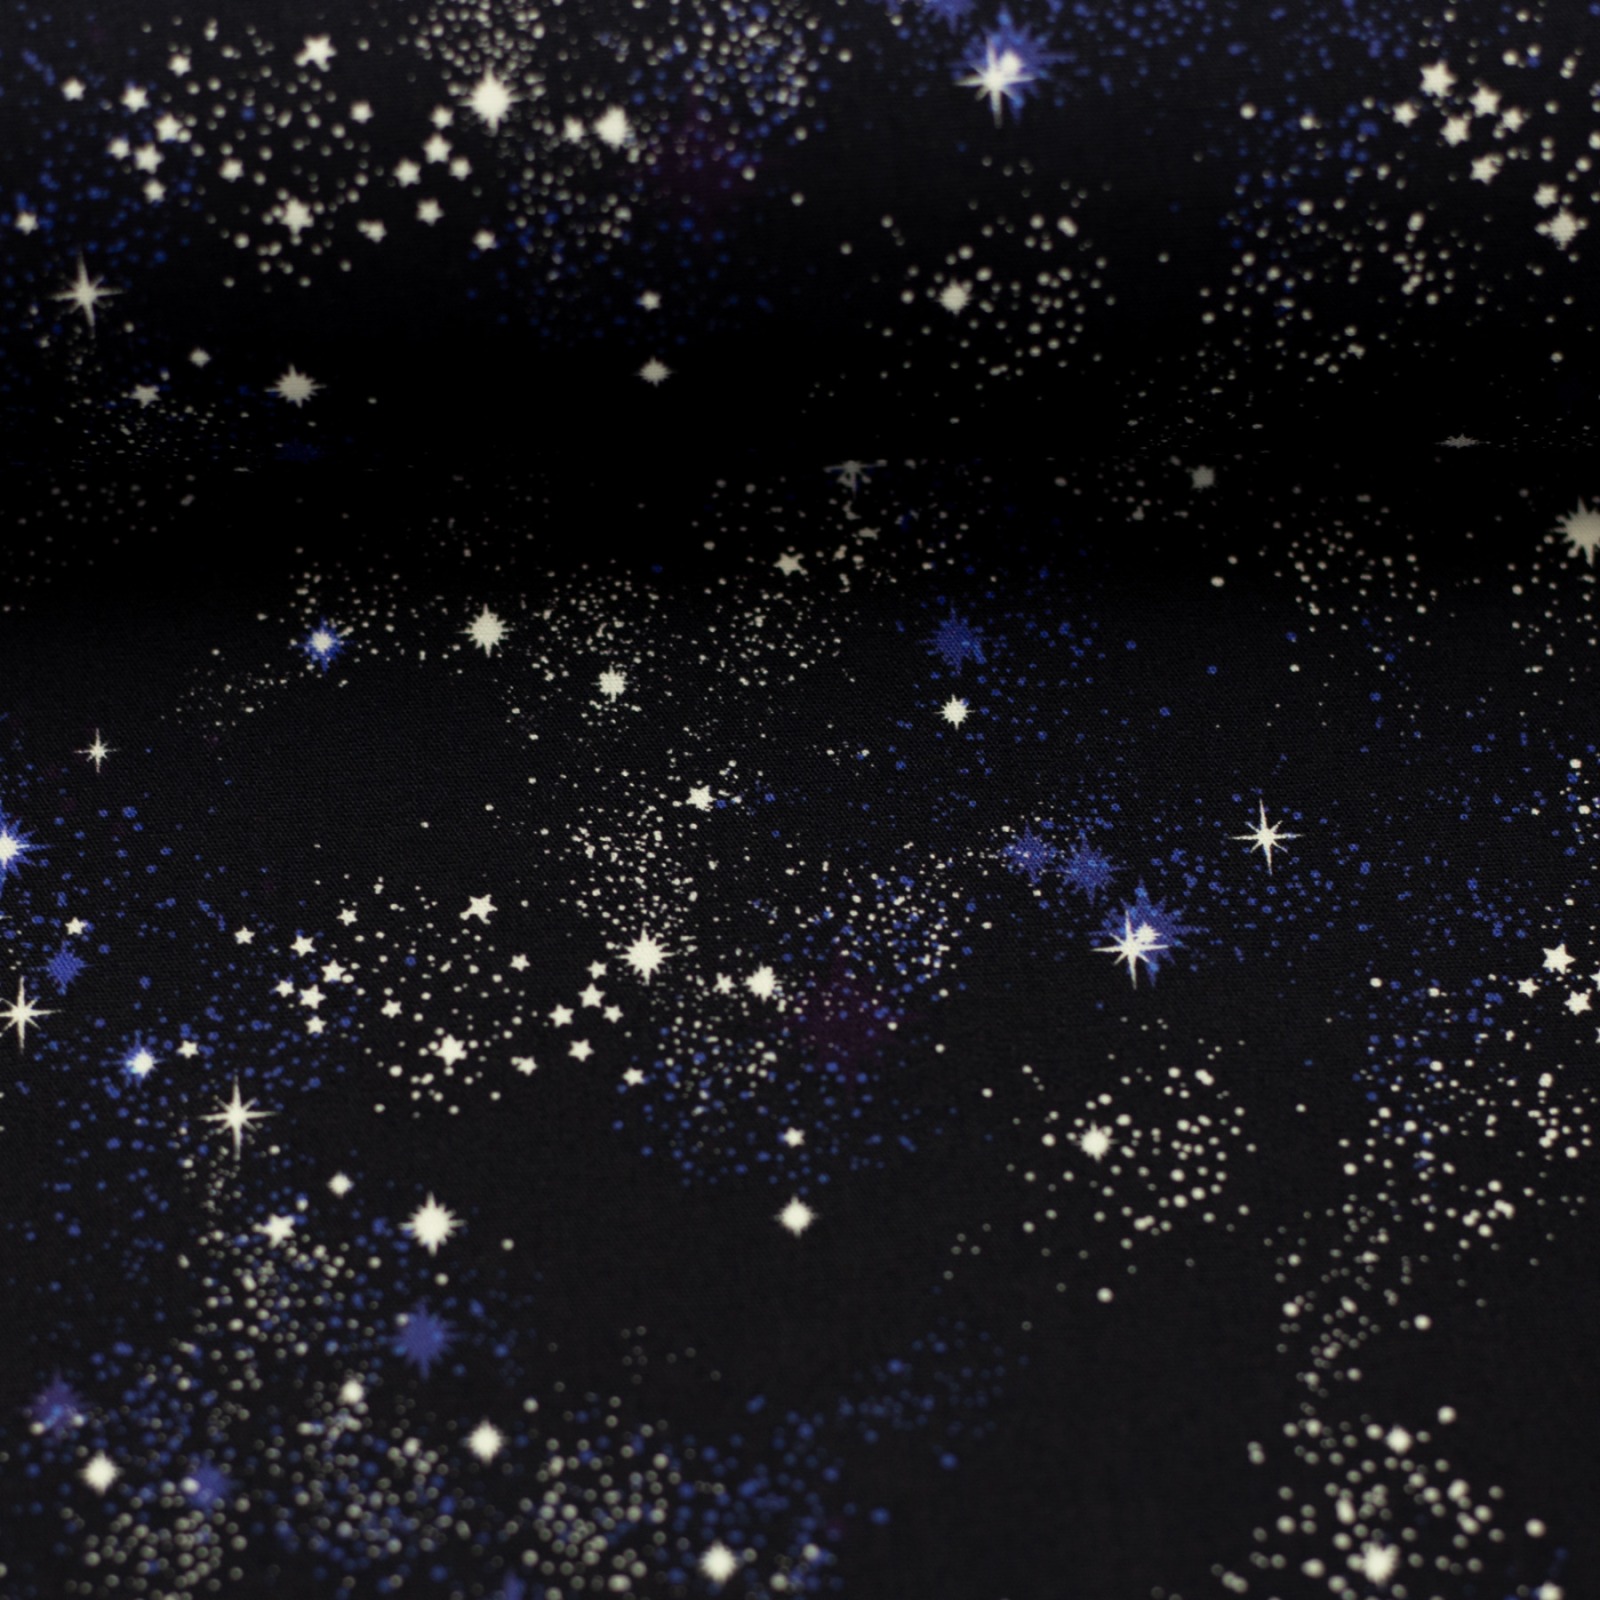 Baumwolle Sternenhimmel kleine Sterne Swafing Tinholt Weltall Galaxie 3